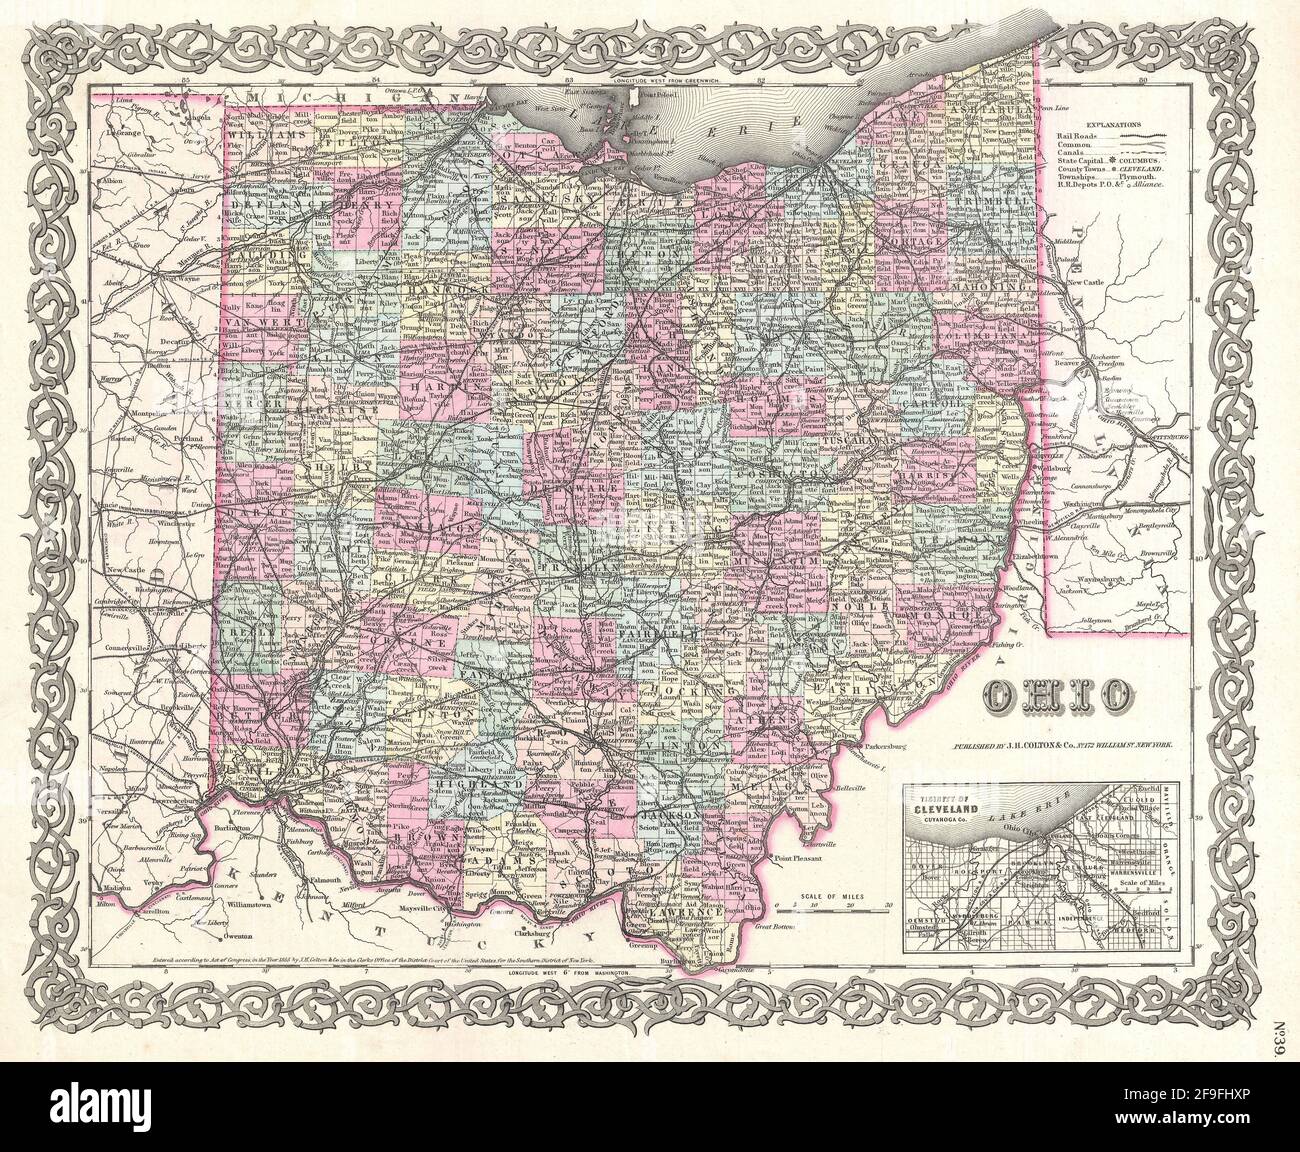 Hermoso mapa de Colton dibujado a mano de 1860 con hermosos mapas coloridos e ilustraciones de países, regiones y océanos. Foto de stock